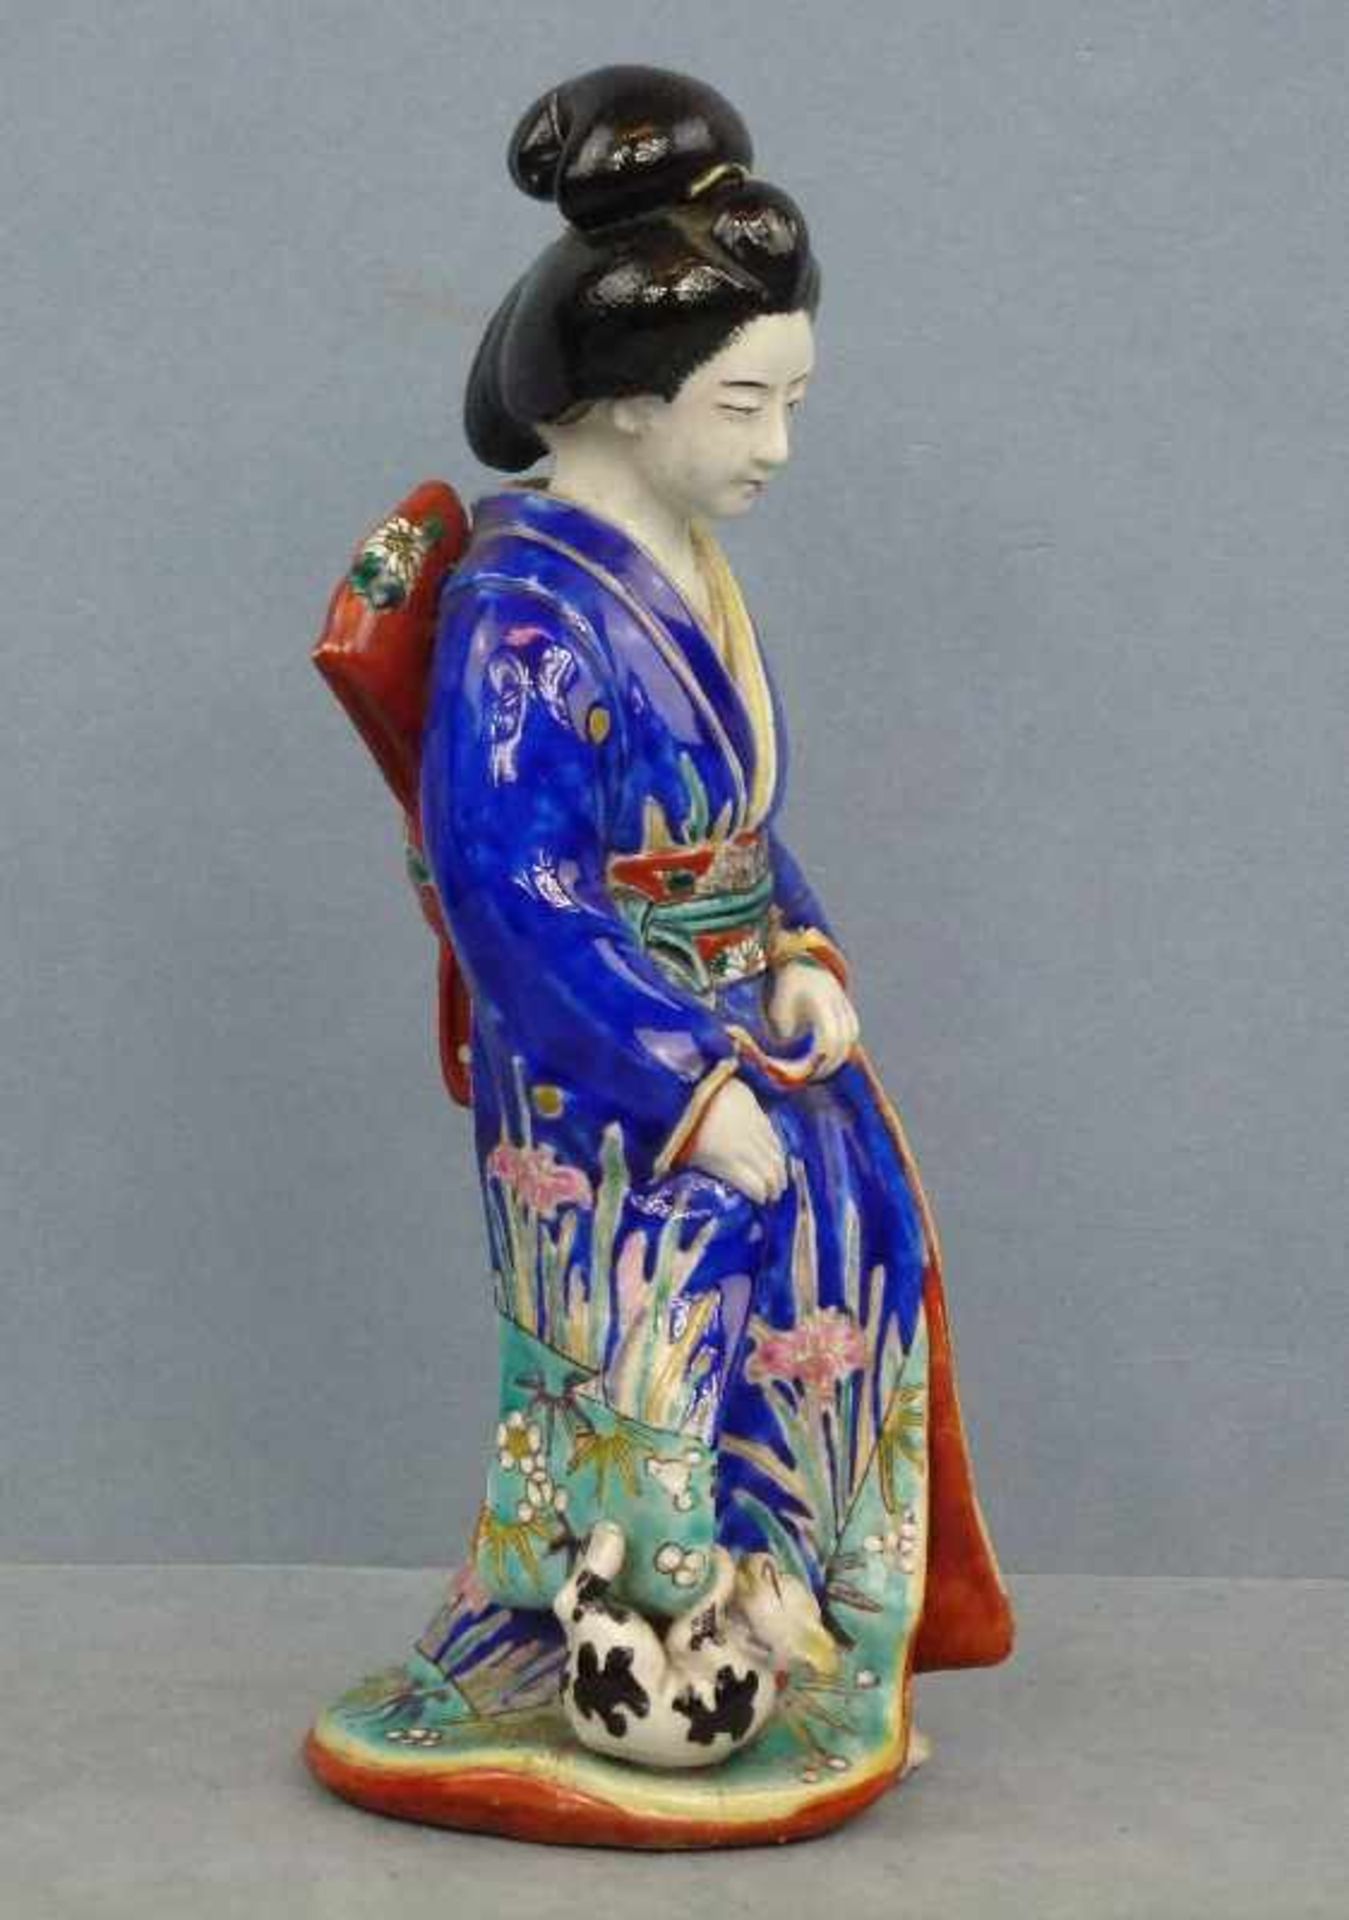 Geisha-Figur, Japan 19.Jh. Porzellan, stehende Japanerin in blauem Kimono, gr. Schleife auf dem - Bild 2 aus 4